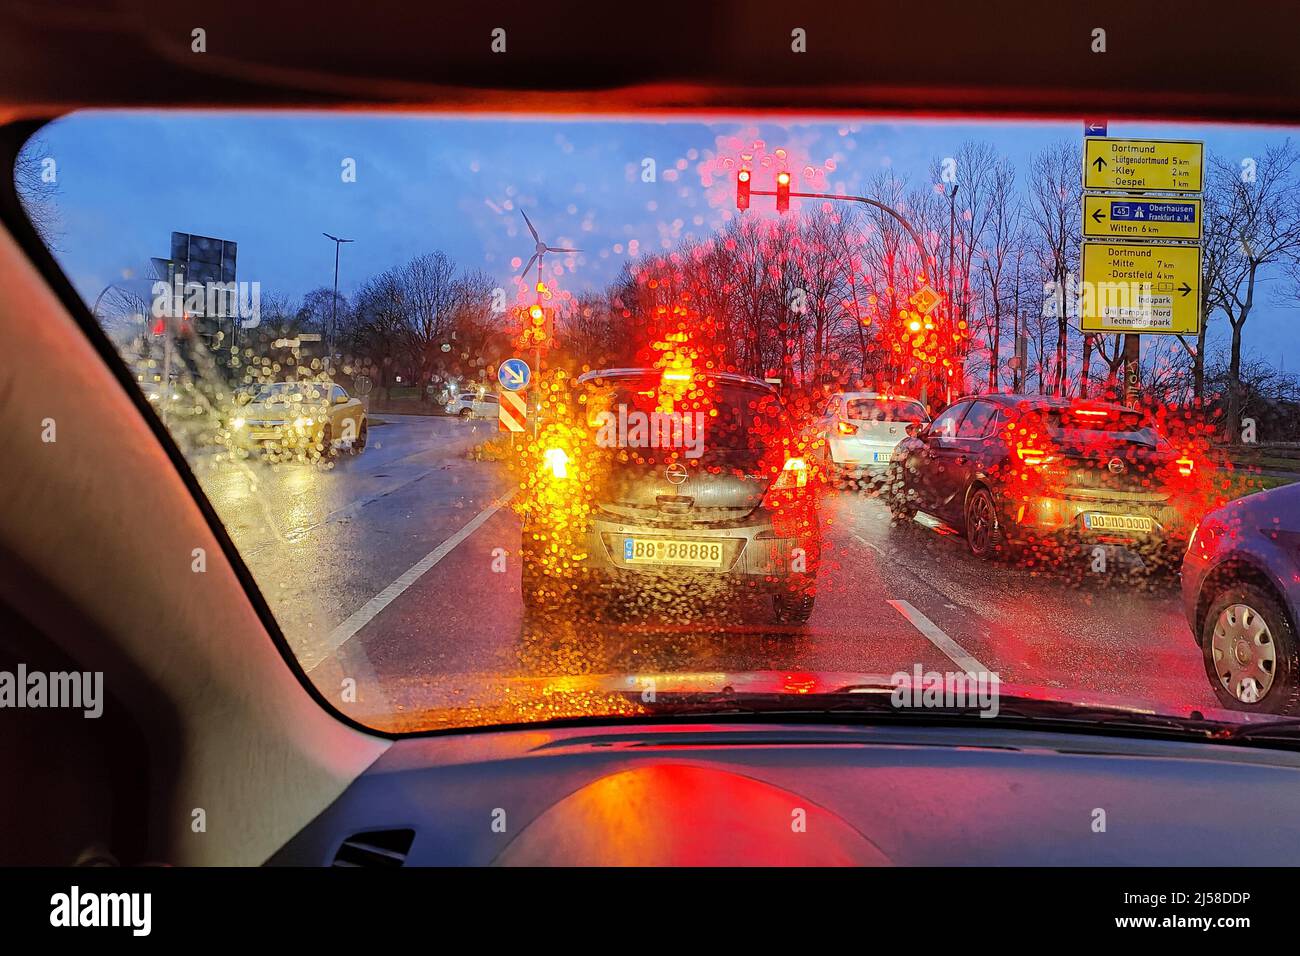 Blick aus dem Auto durch eine regengasse Scheibe mit unklarer Sicht auf den Verkehr am Abend, Dortmund, Ruhrgebiet, Deutschland Banque D'Images